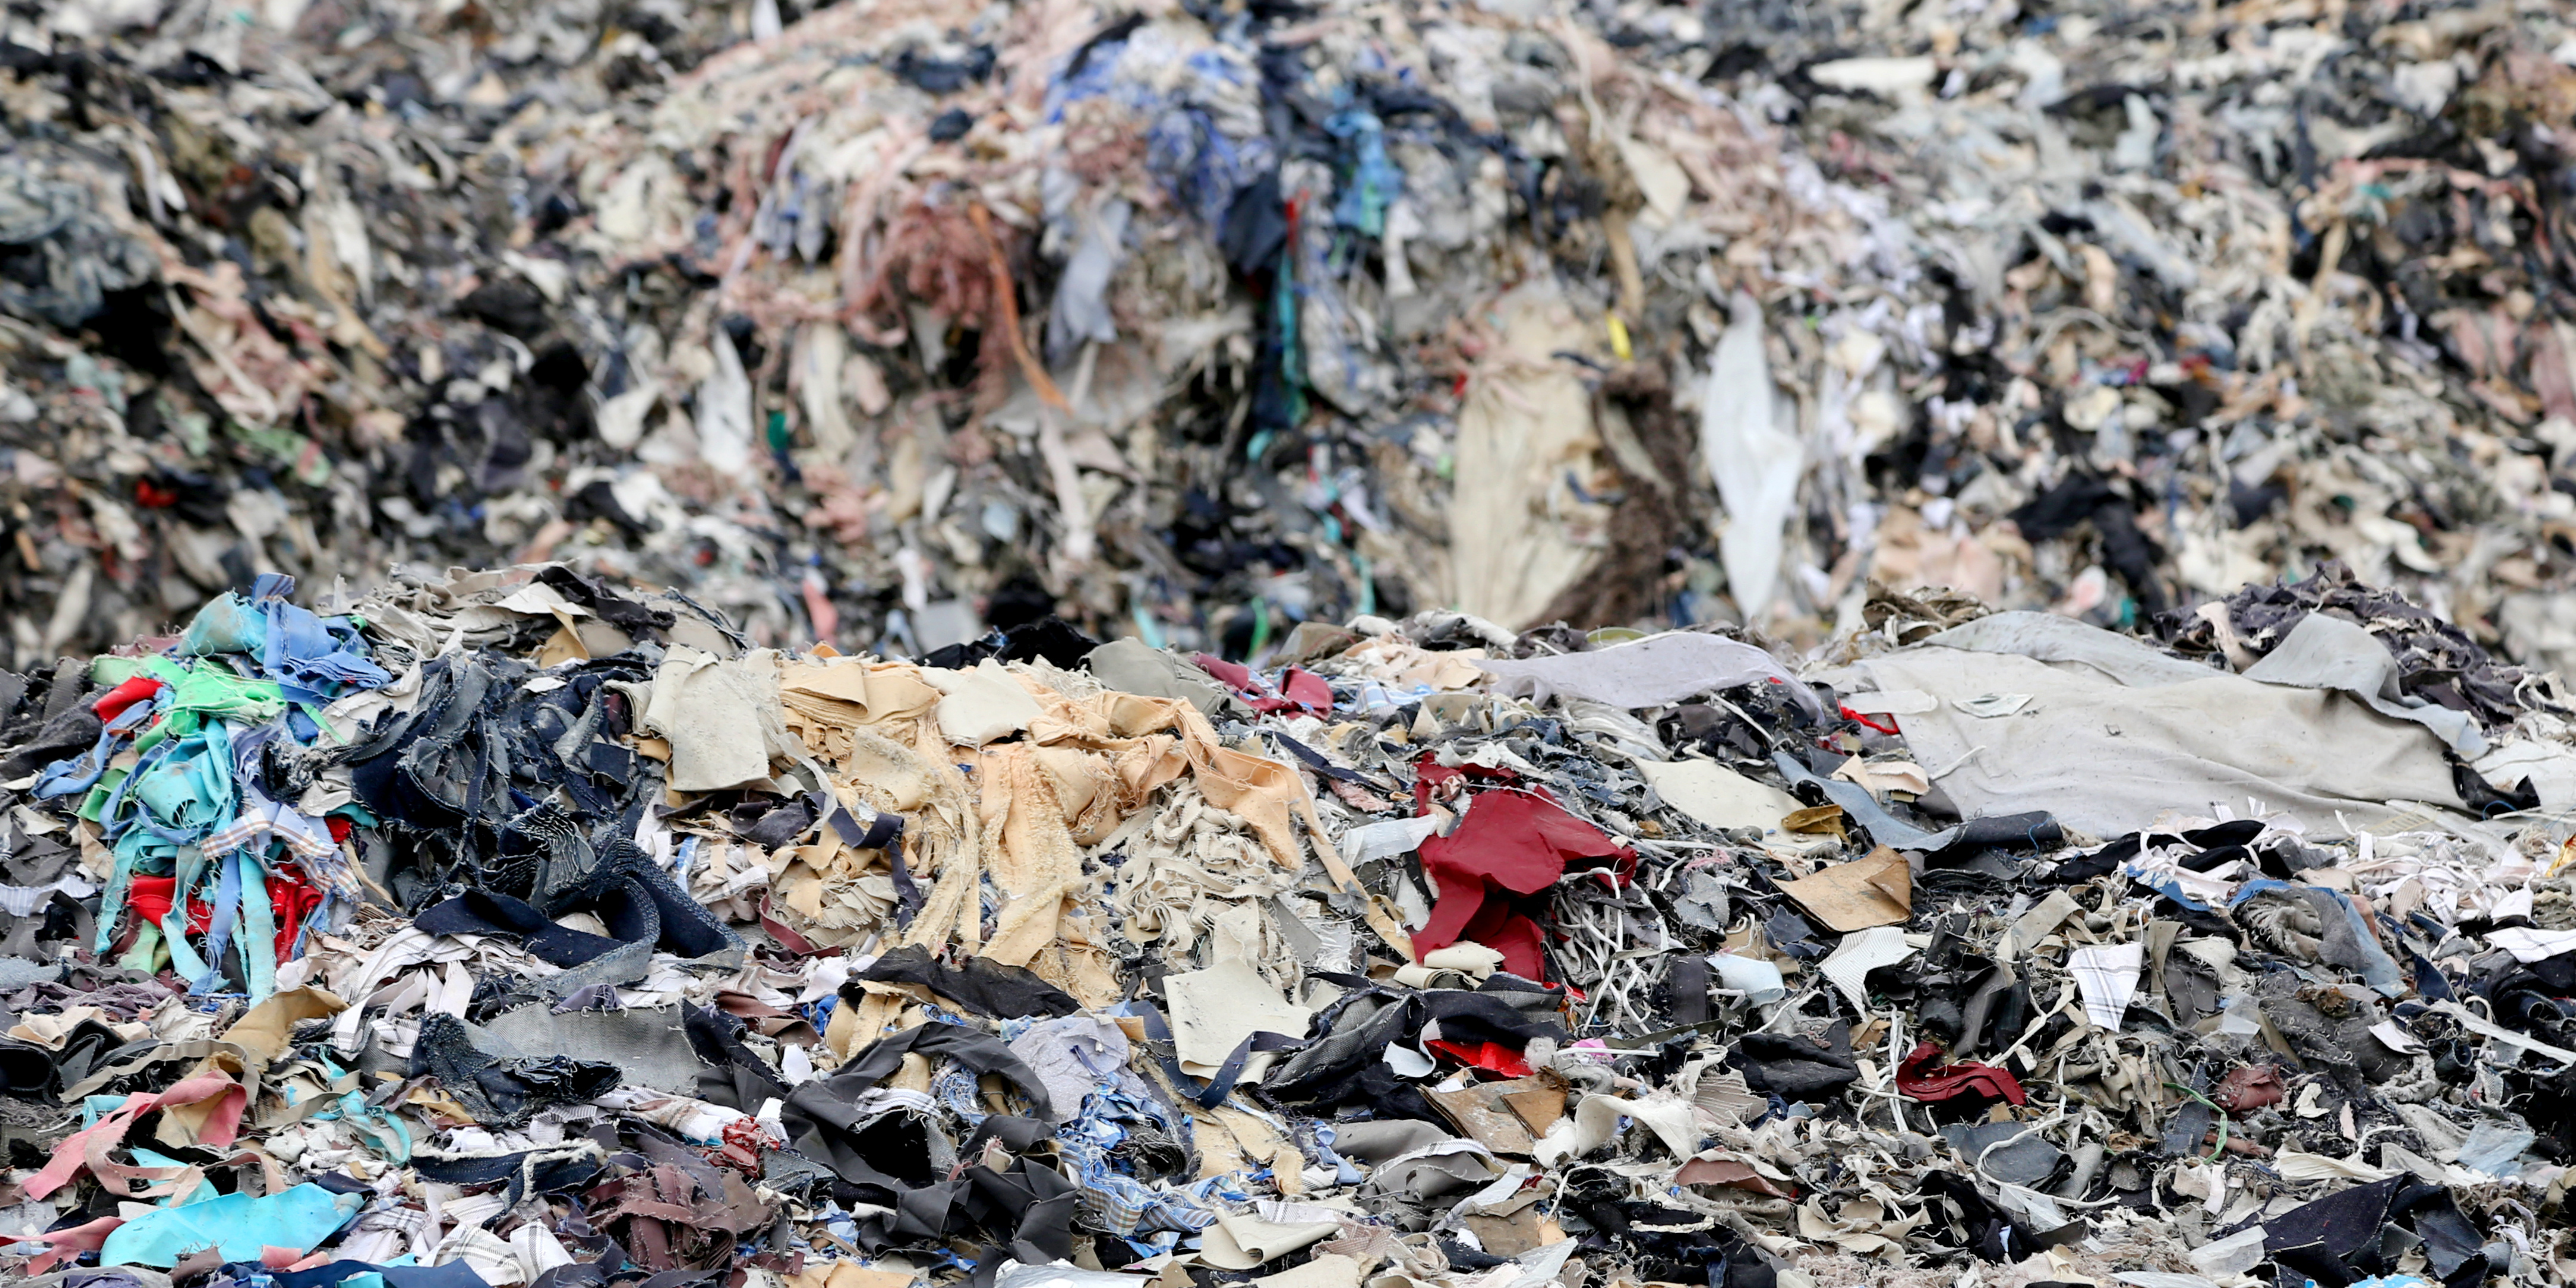 106 millioner til grøn forskningsmission om genbrug af plast og tekstil